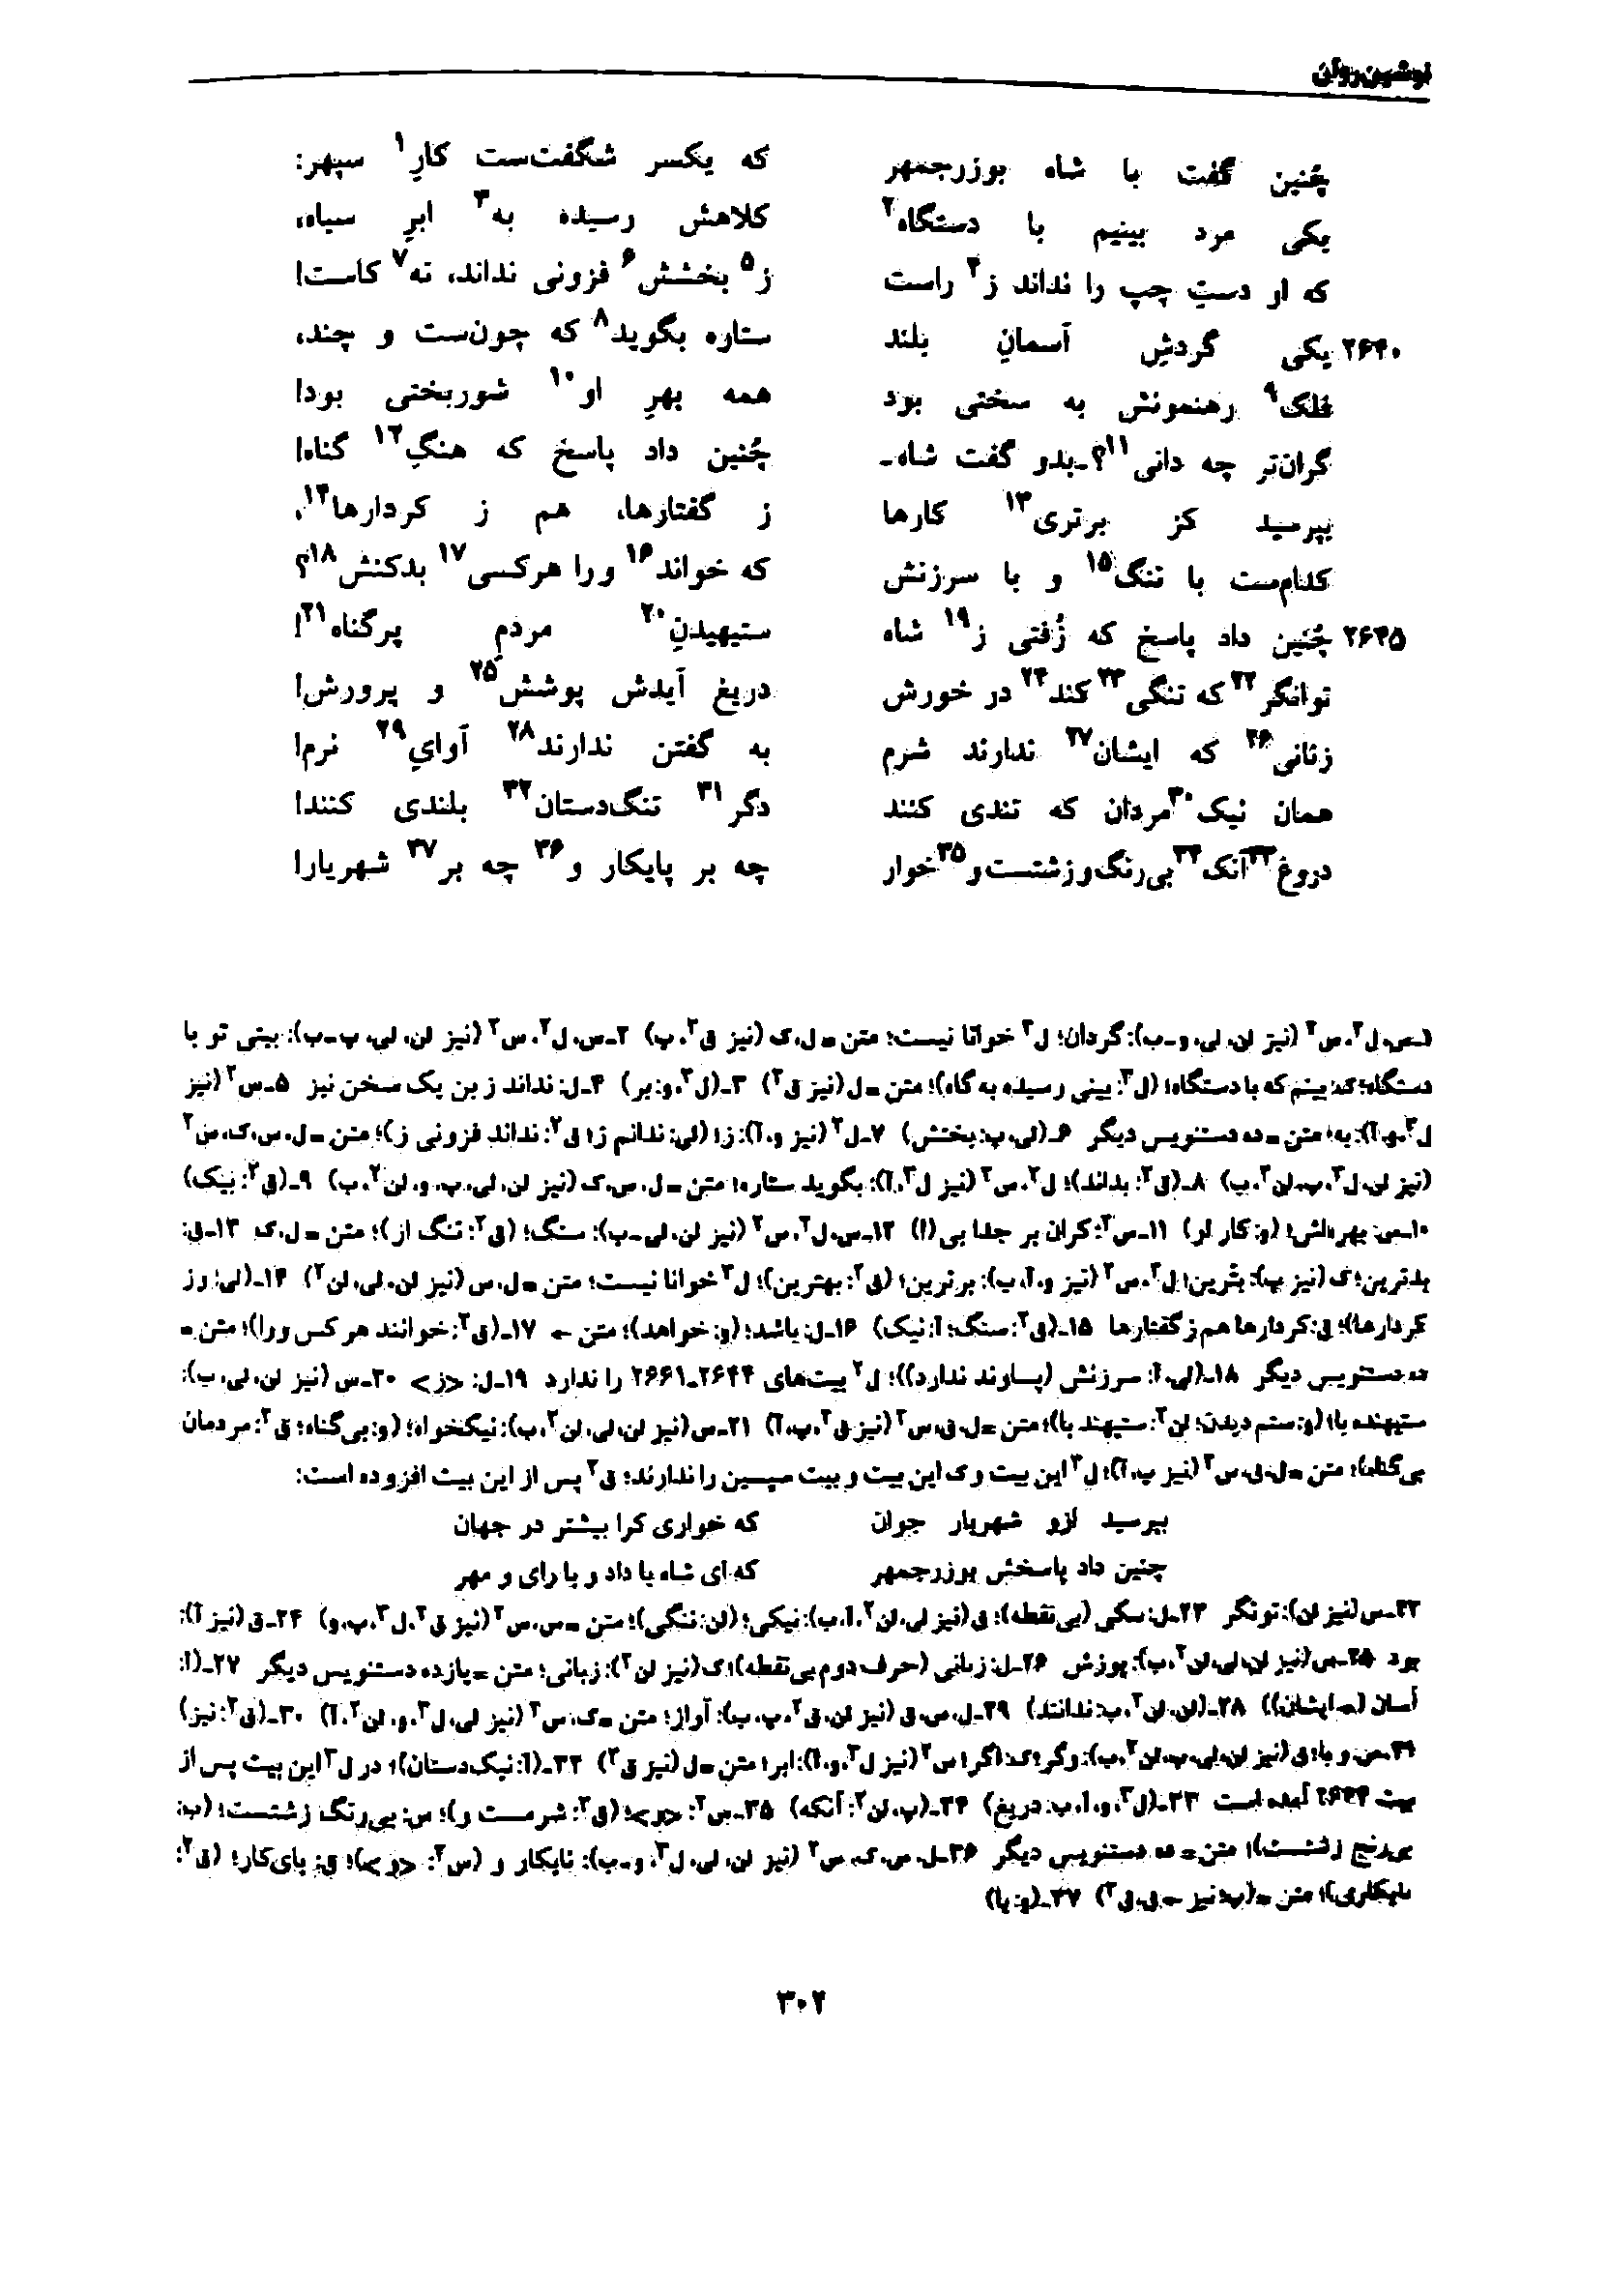 vol. 7, p. 302